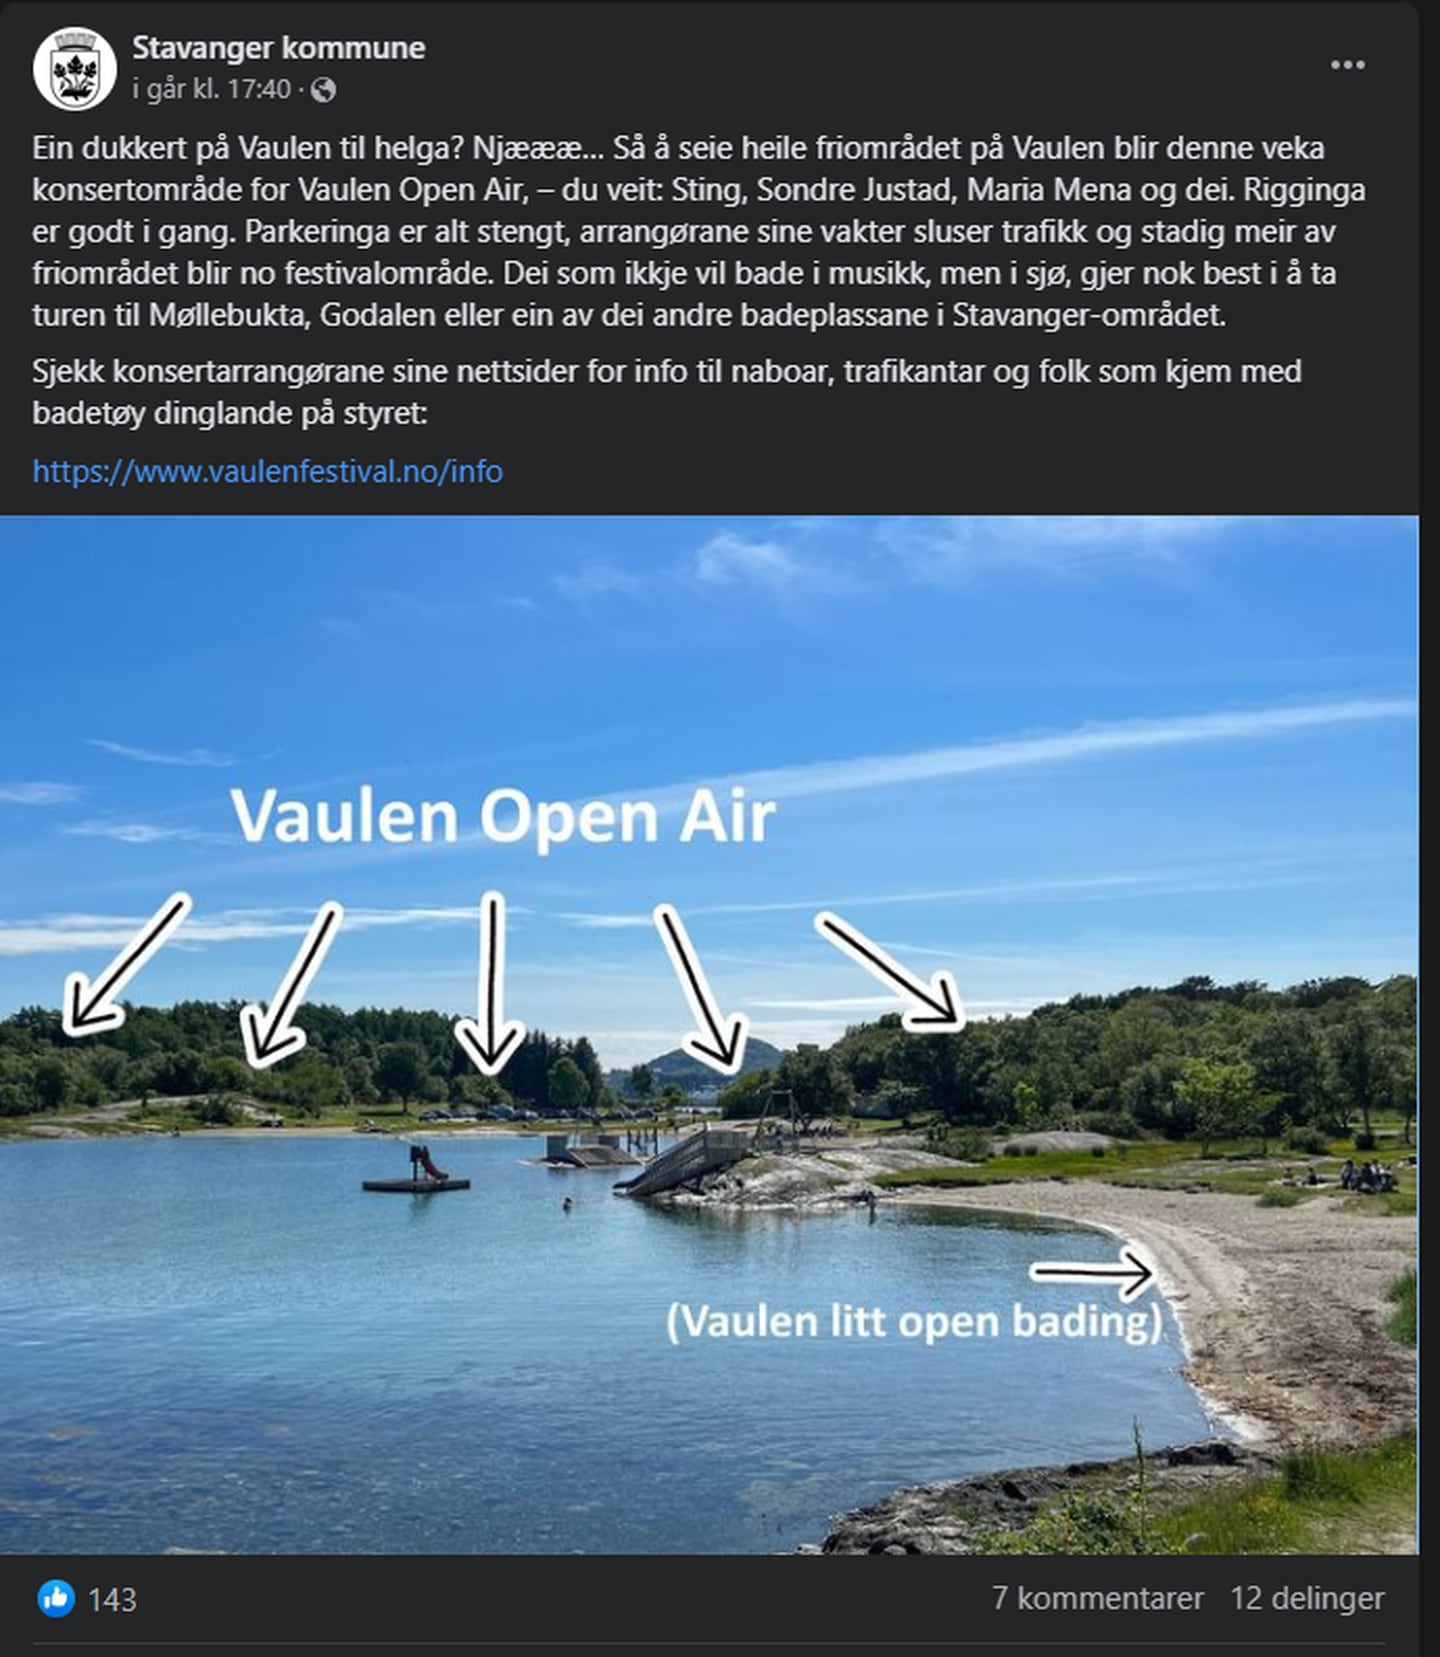 Stavanger kommune har delt informasjon på sine nettsider. Her fra Facebook-profilen til kommunen.